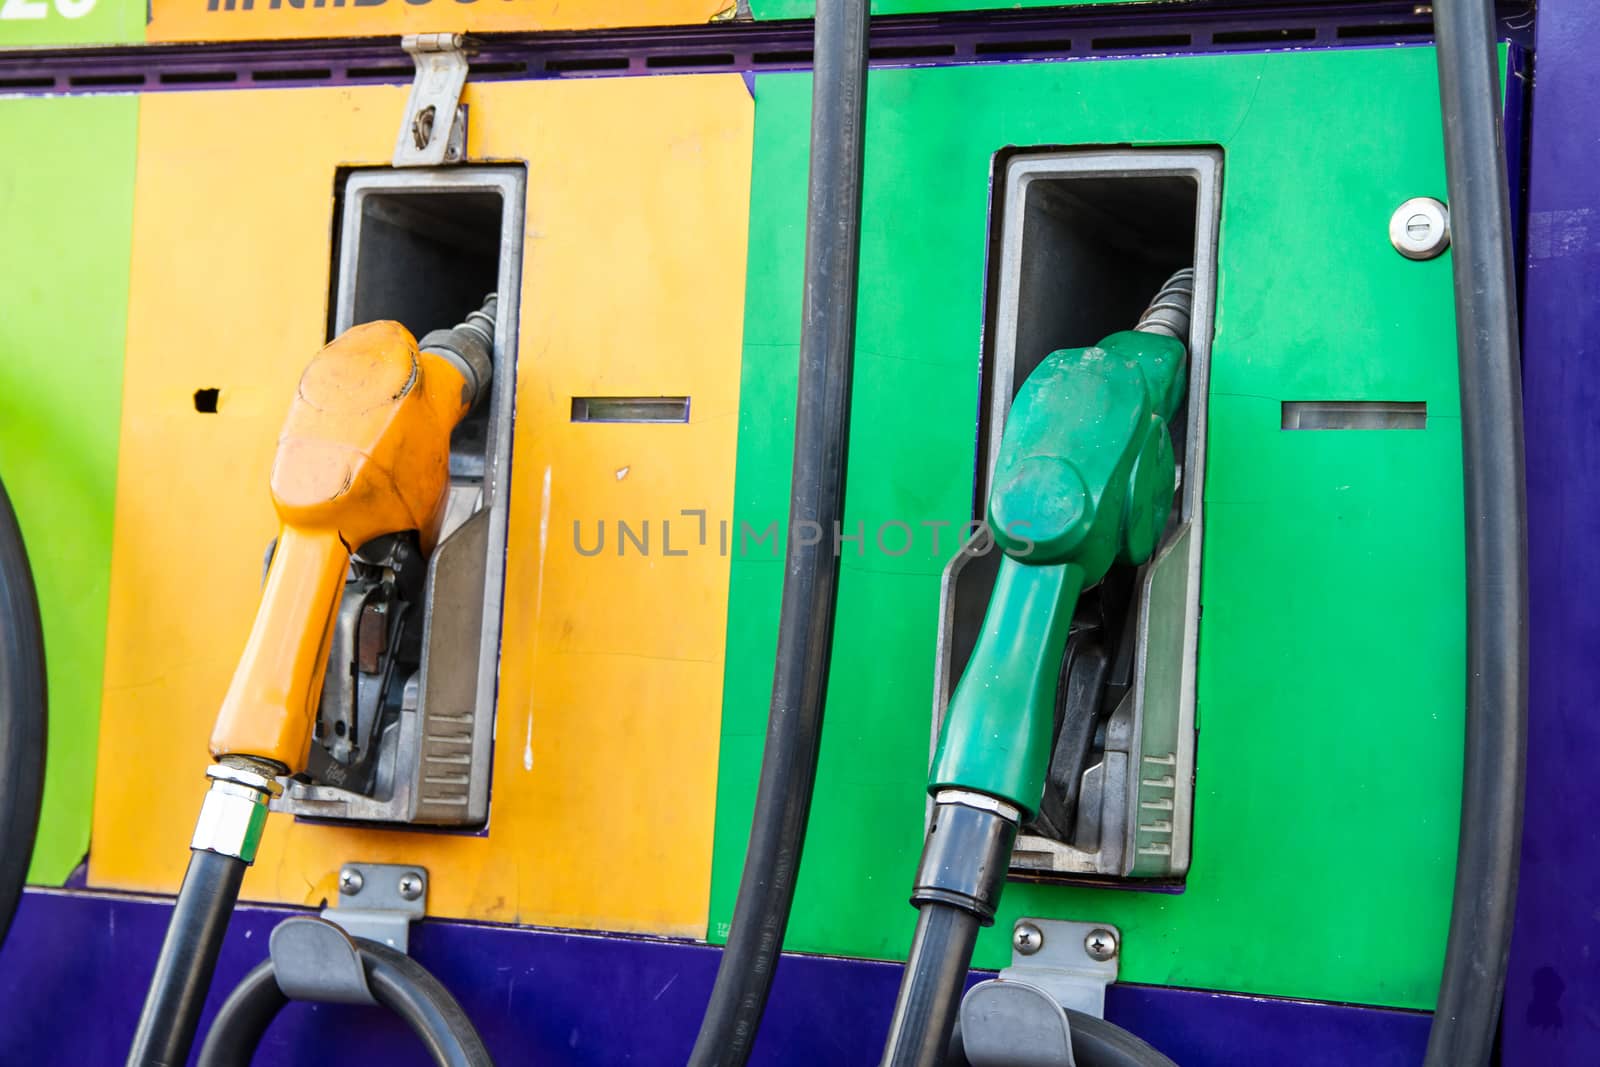 fuel nozzle, gas pump by kasinv